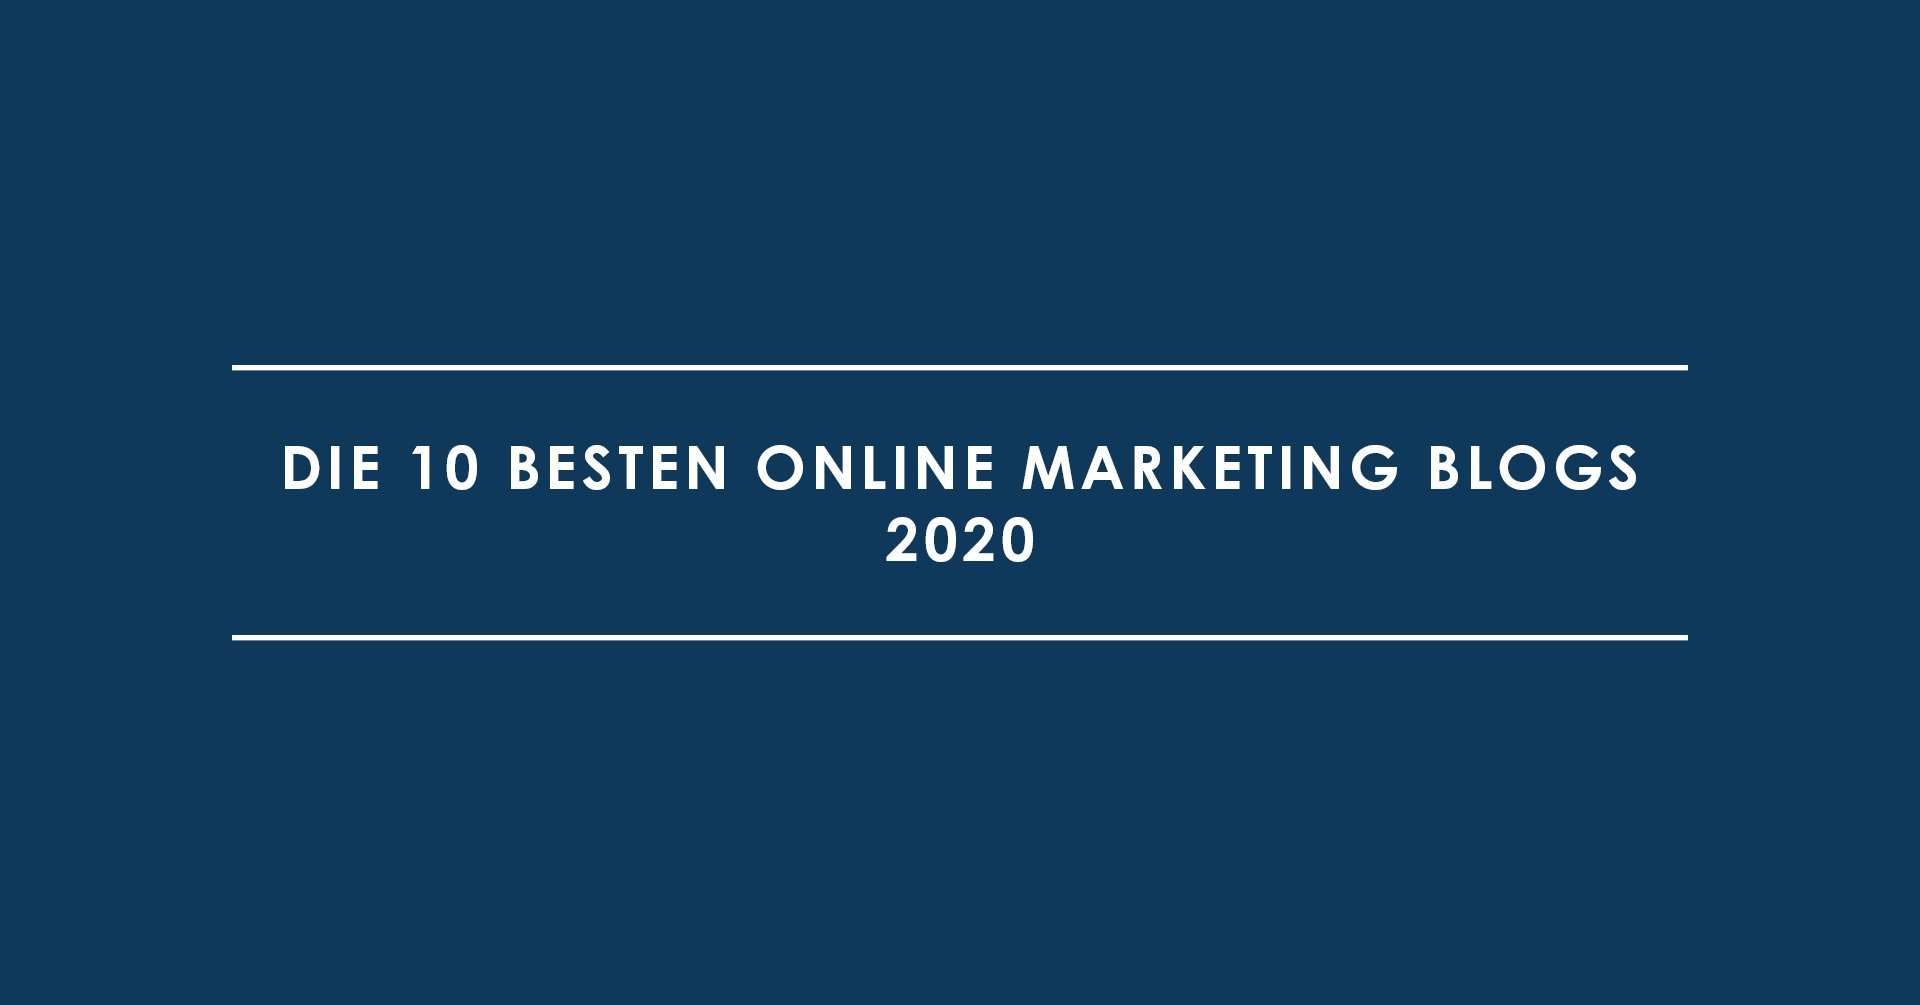 Die 10 besten Online Marketing Blogs 2020